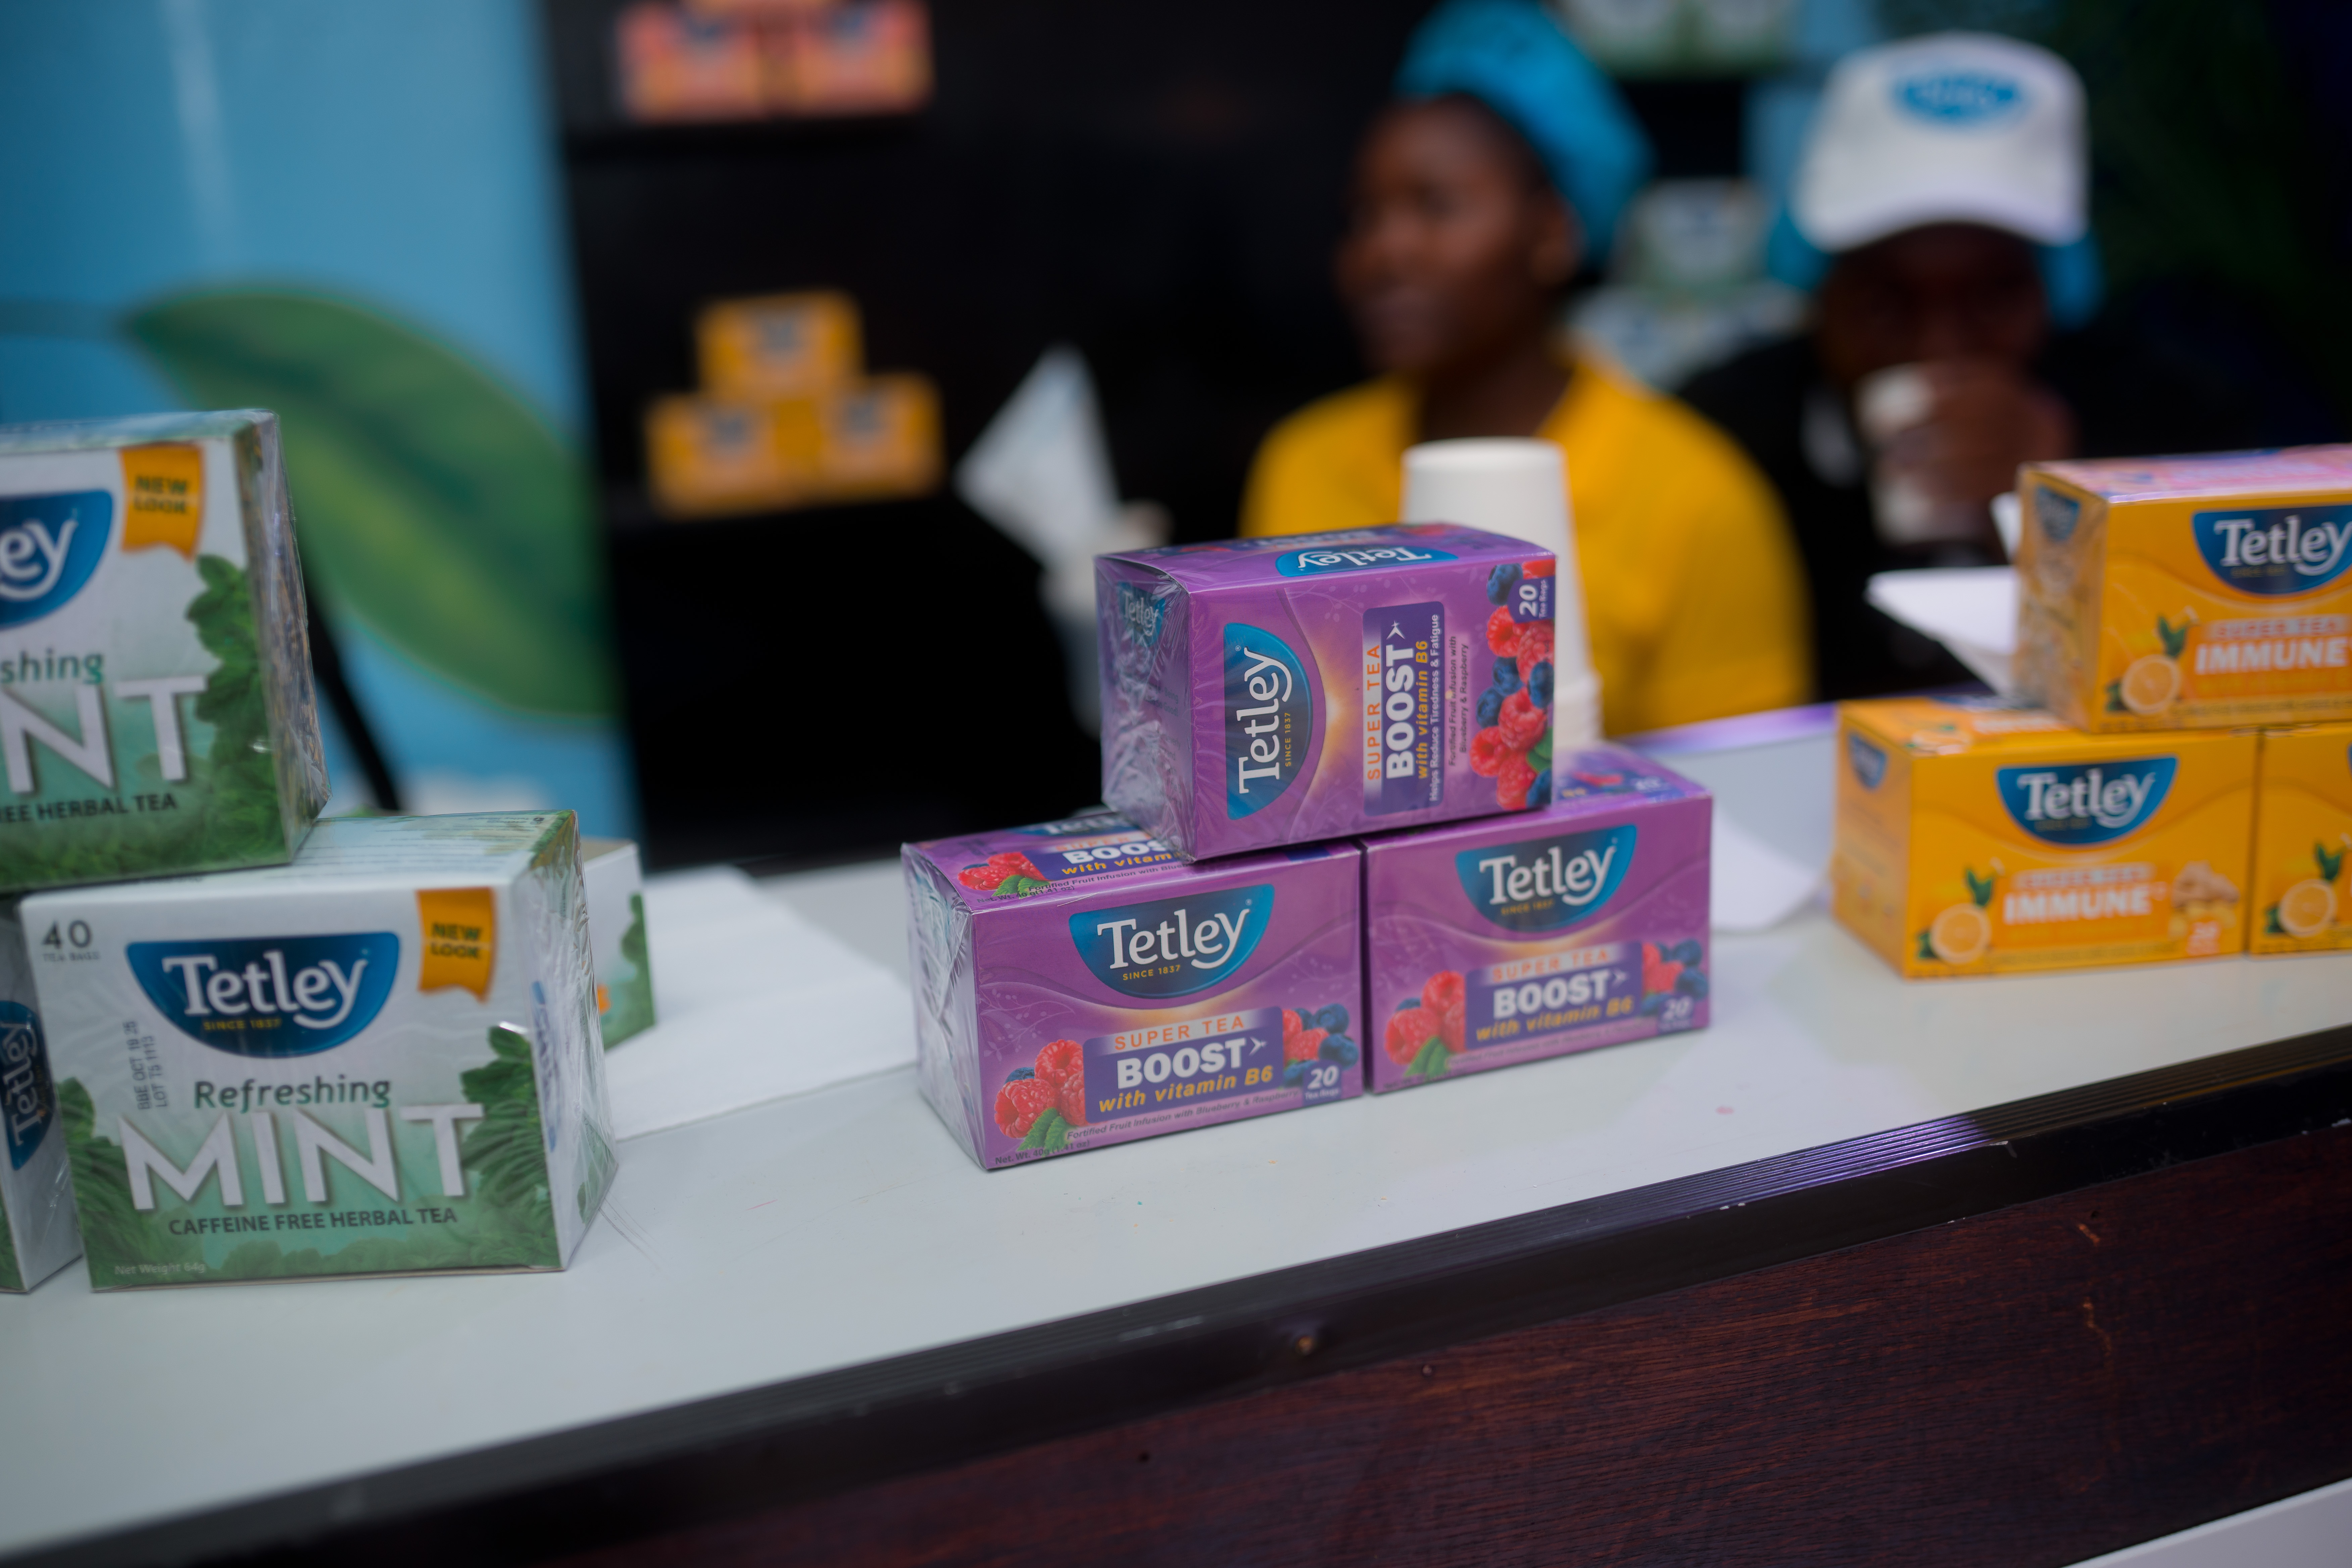 Tetley Jamaica's Boost Super Tea